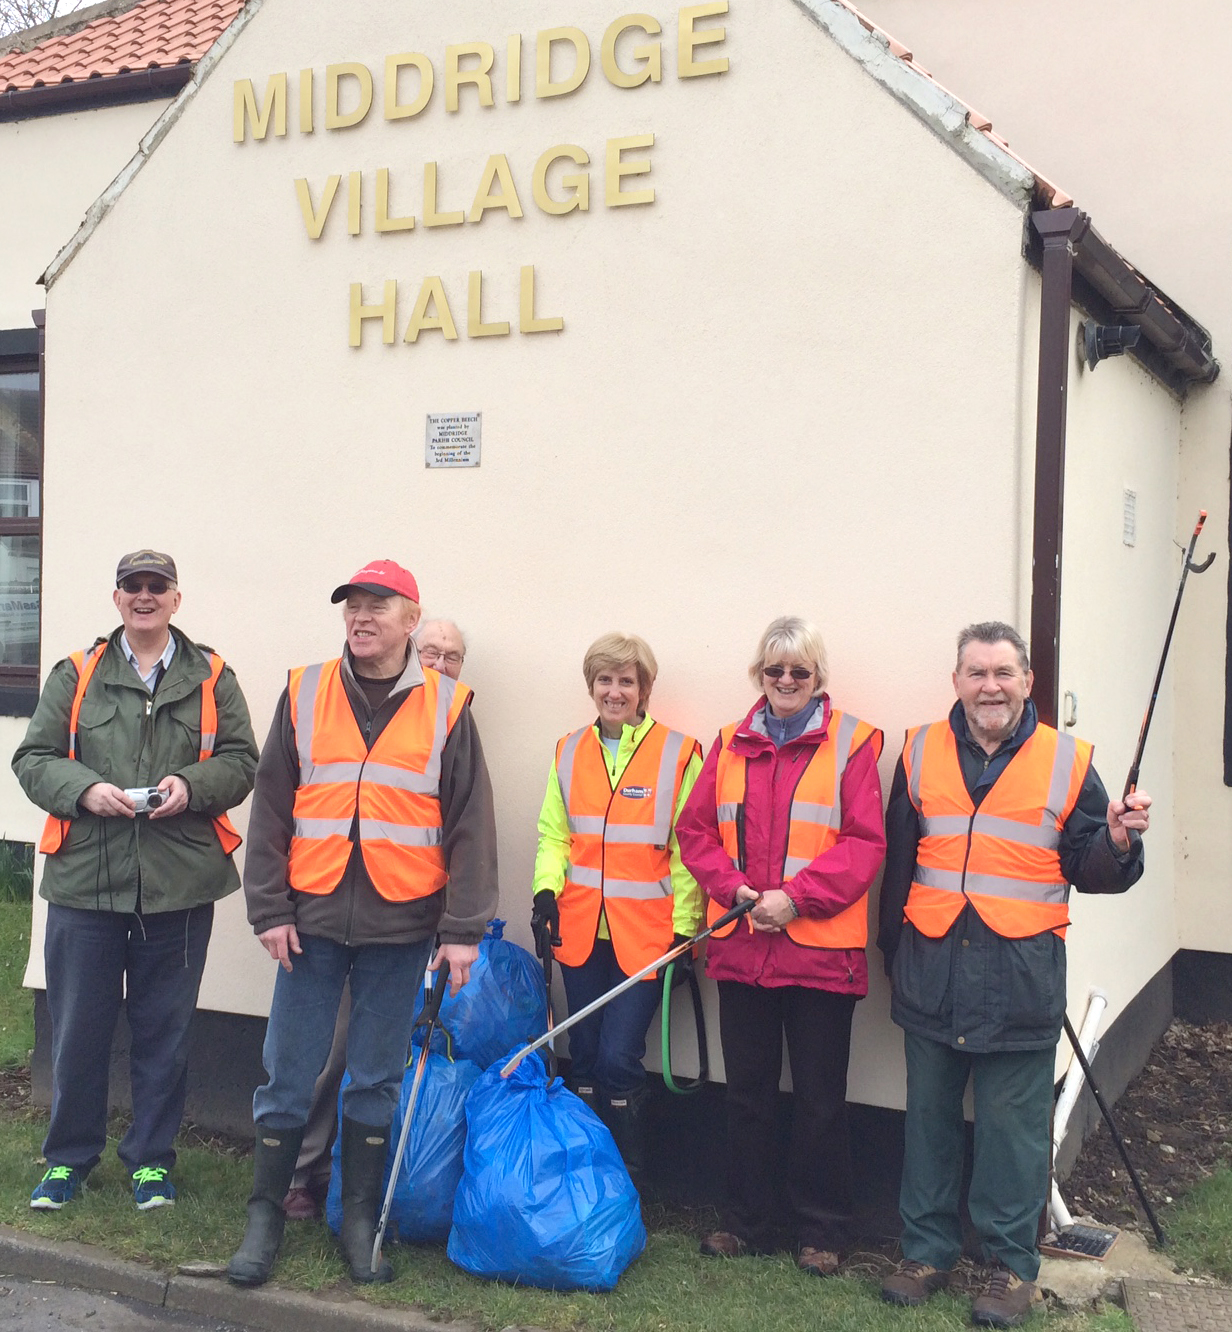 Keeping Middridge Village Clean & Tidy